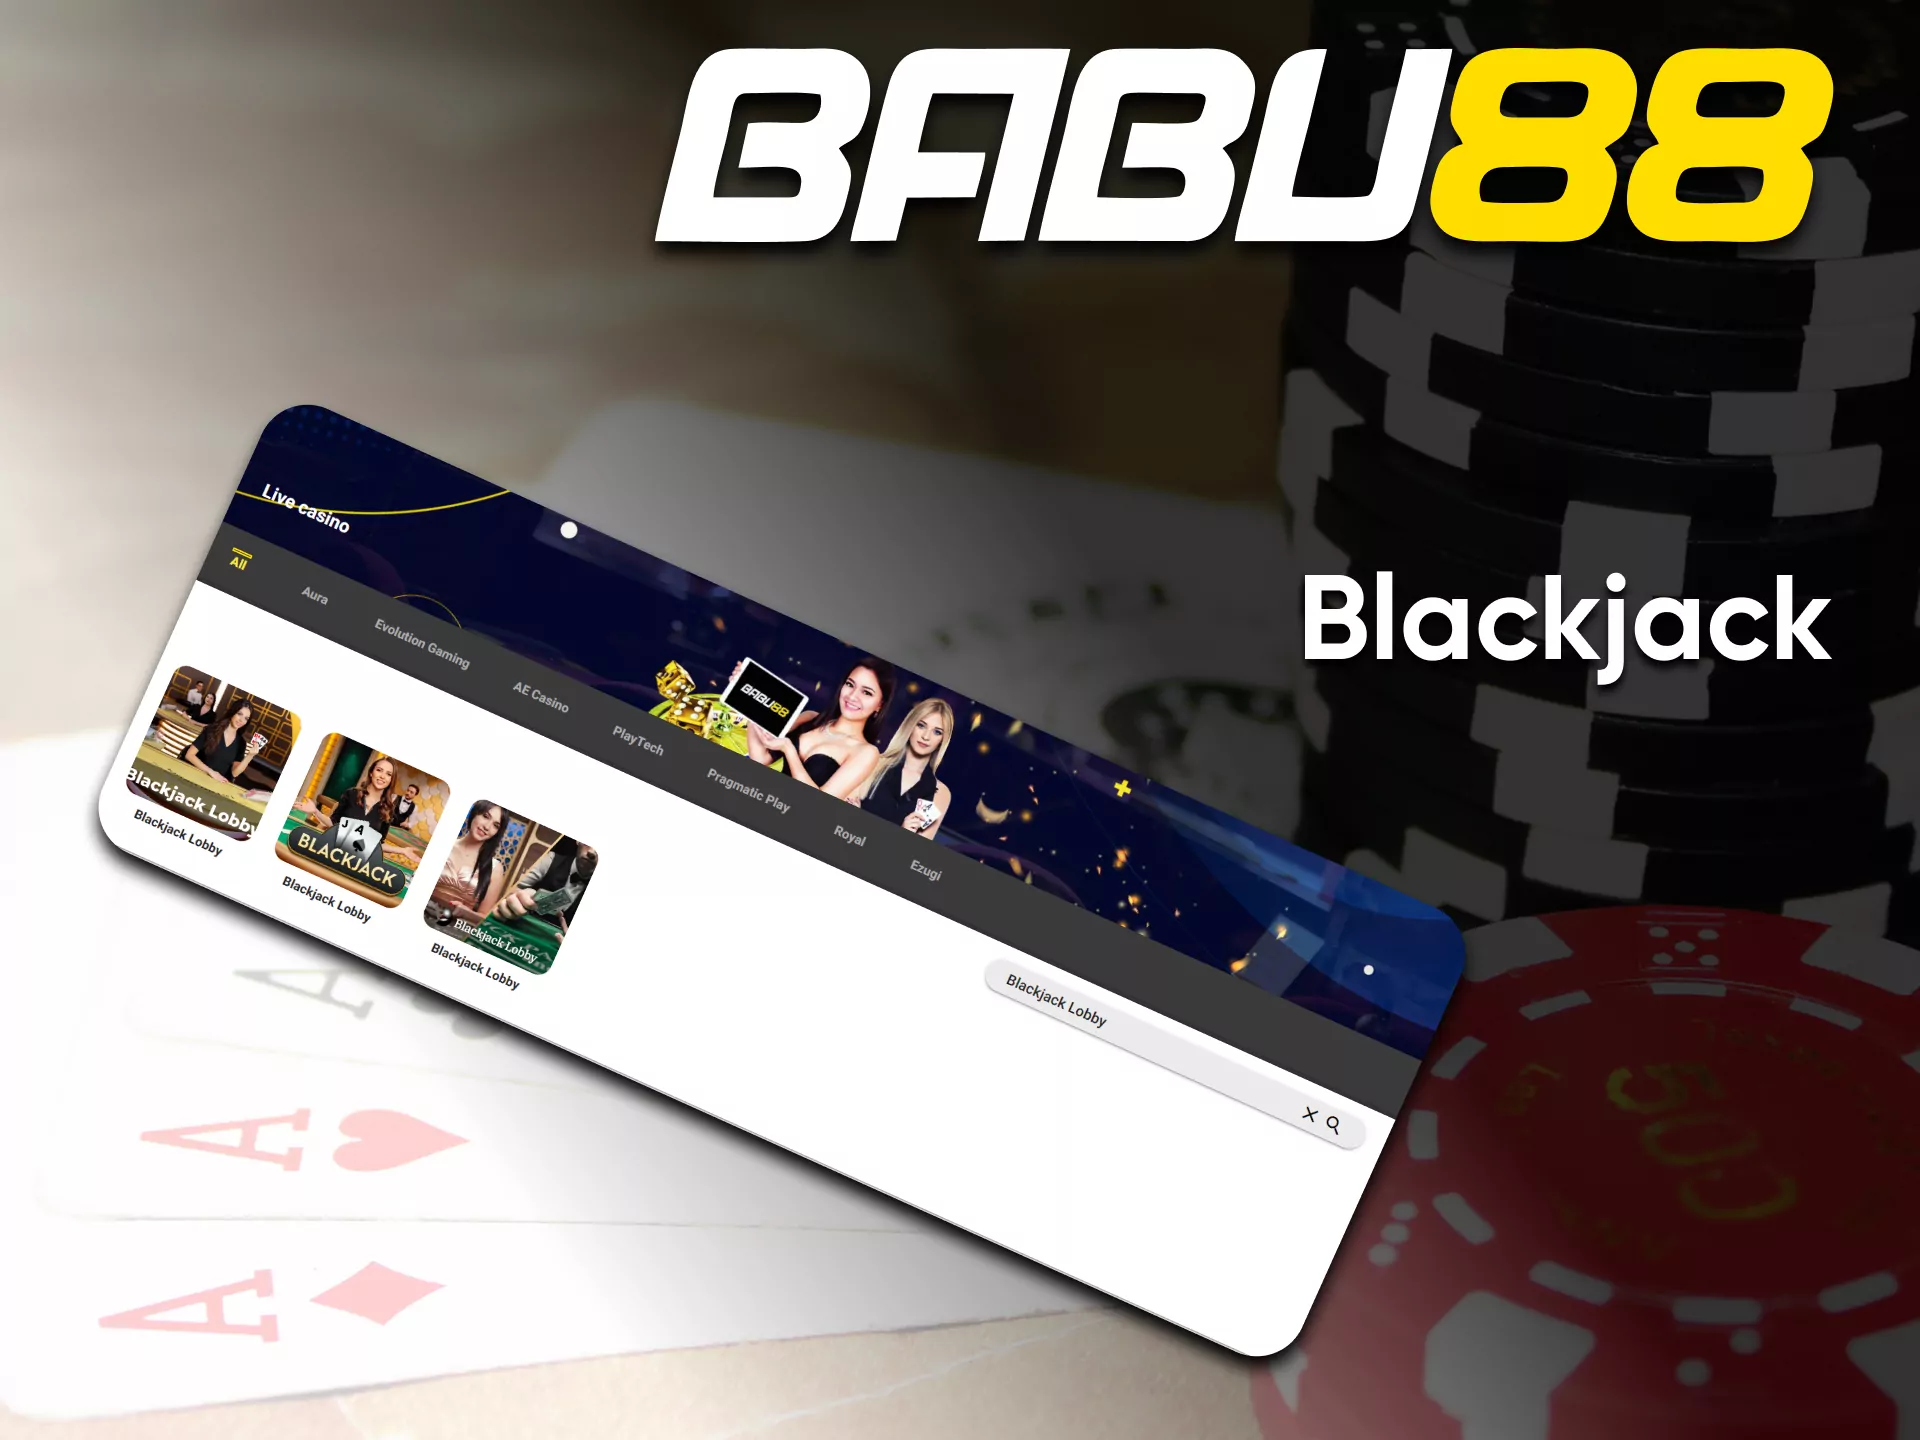 On the Babu88 you can play Blackjack.